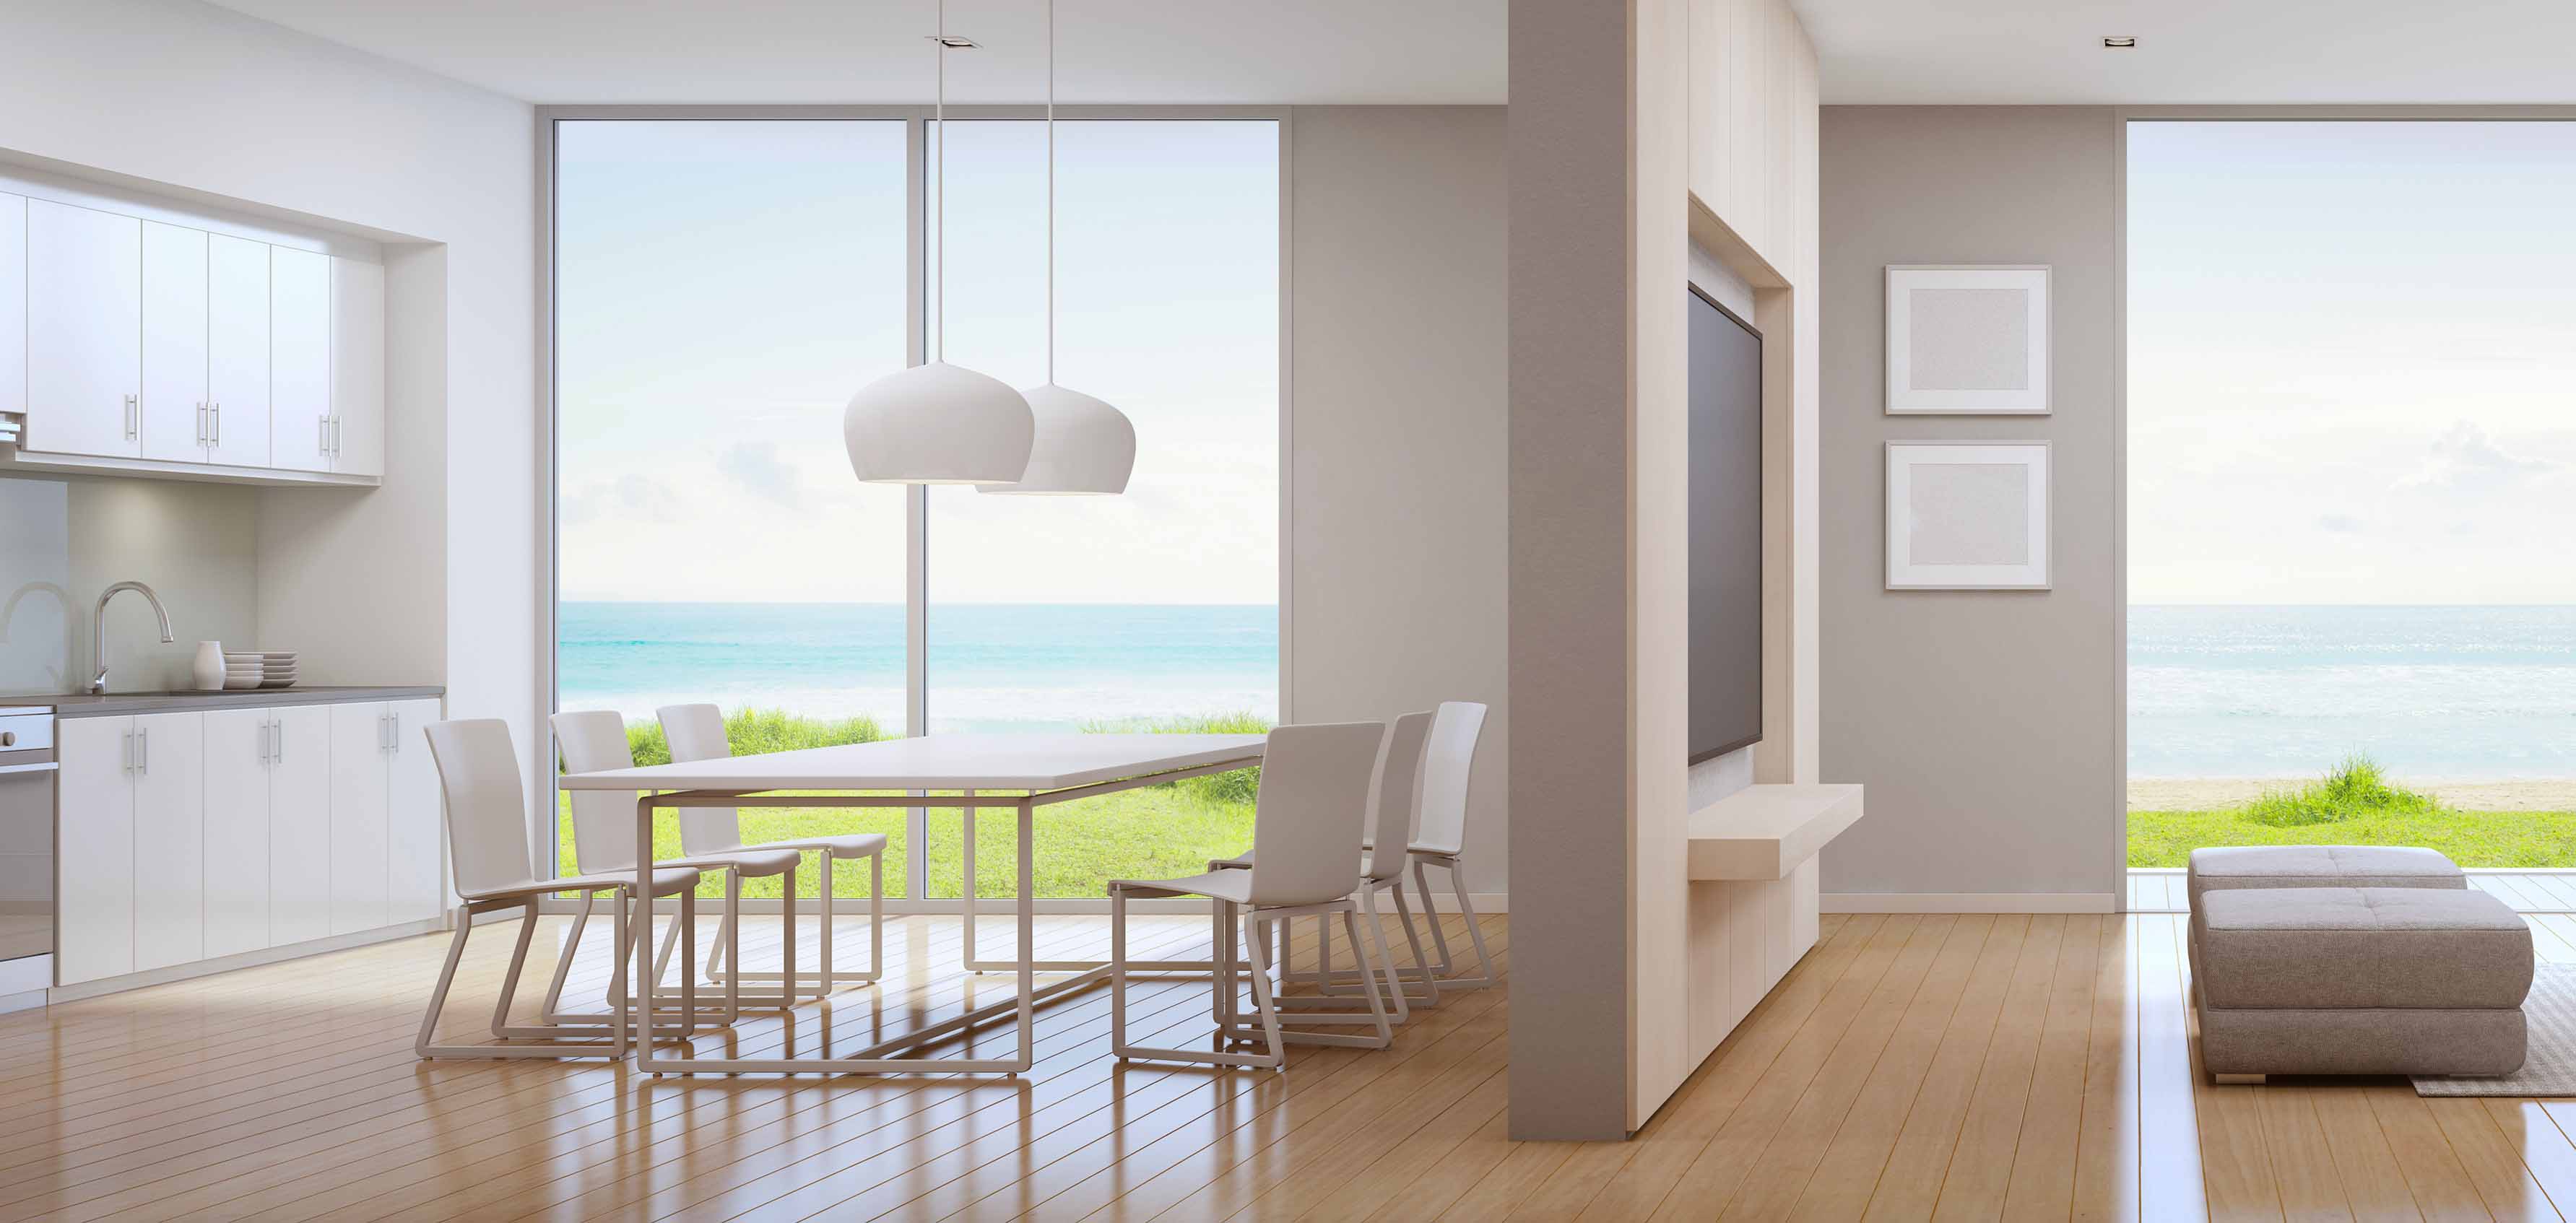 Cozinha integrada com a sala: saiba escolher o piso ideal